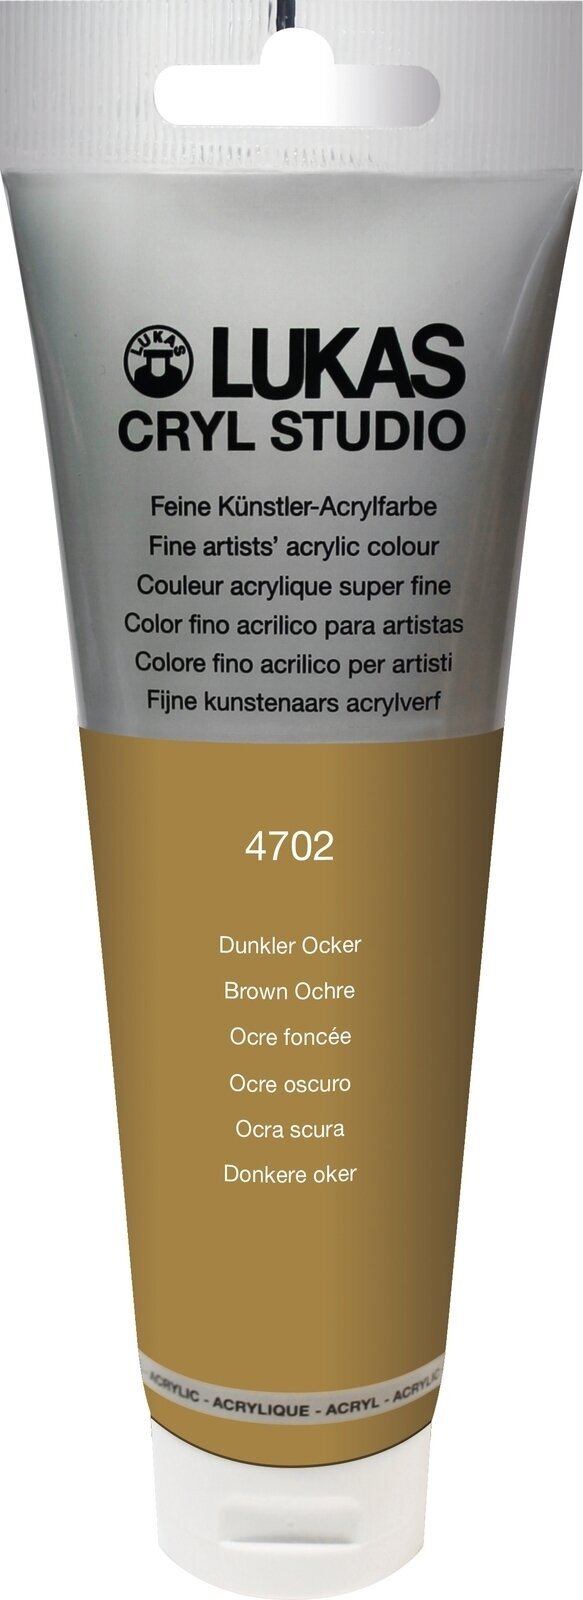 Tinta acrílica Lukas Cryl Studio Acrylic Paint Plastic Tube Tinta acrílica Brown Ochre 125 ml 1 un.